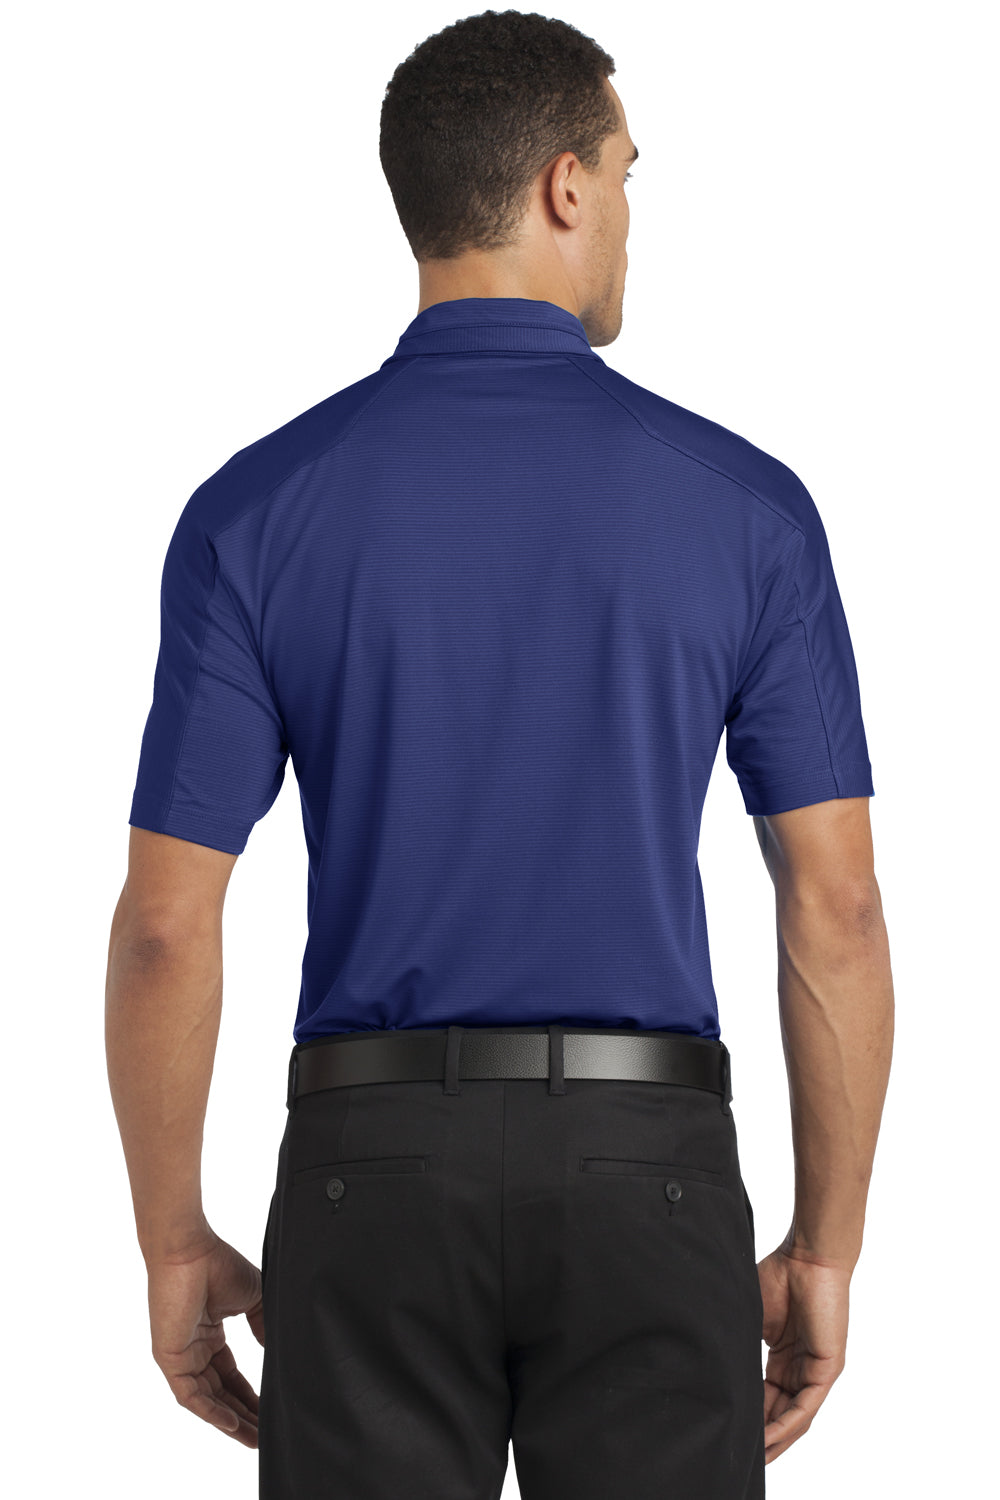 Ogio OG1030 Mens Linear Moisture Wicking Short Sleeve Polo Shirt Blue Back